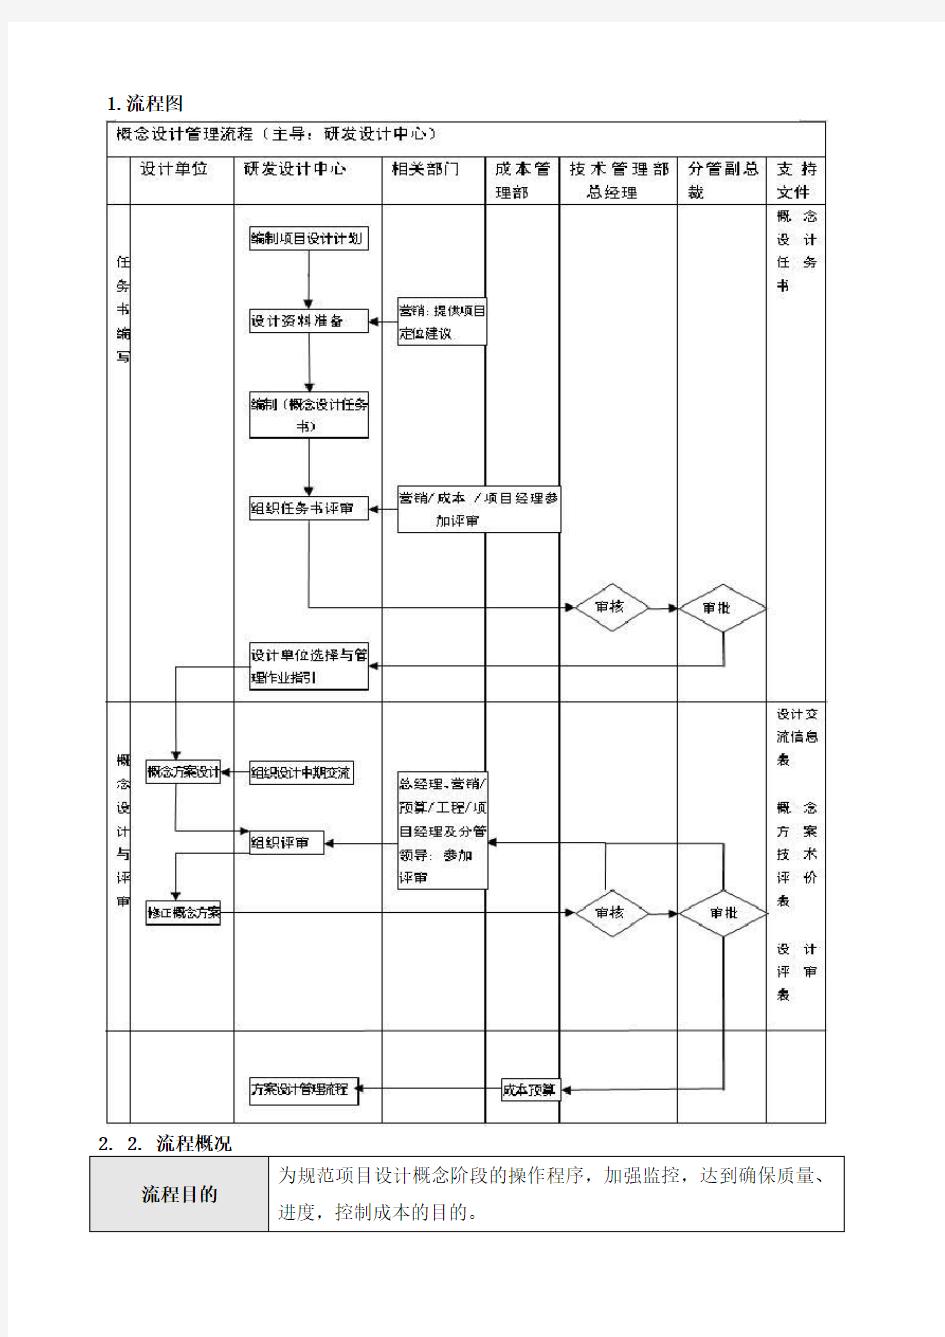 流程管理-HREP1SJ01概念设计管理流程 精品